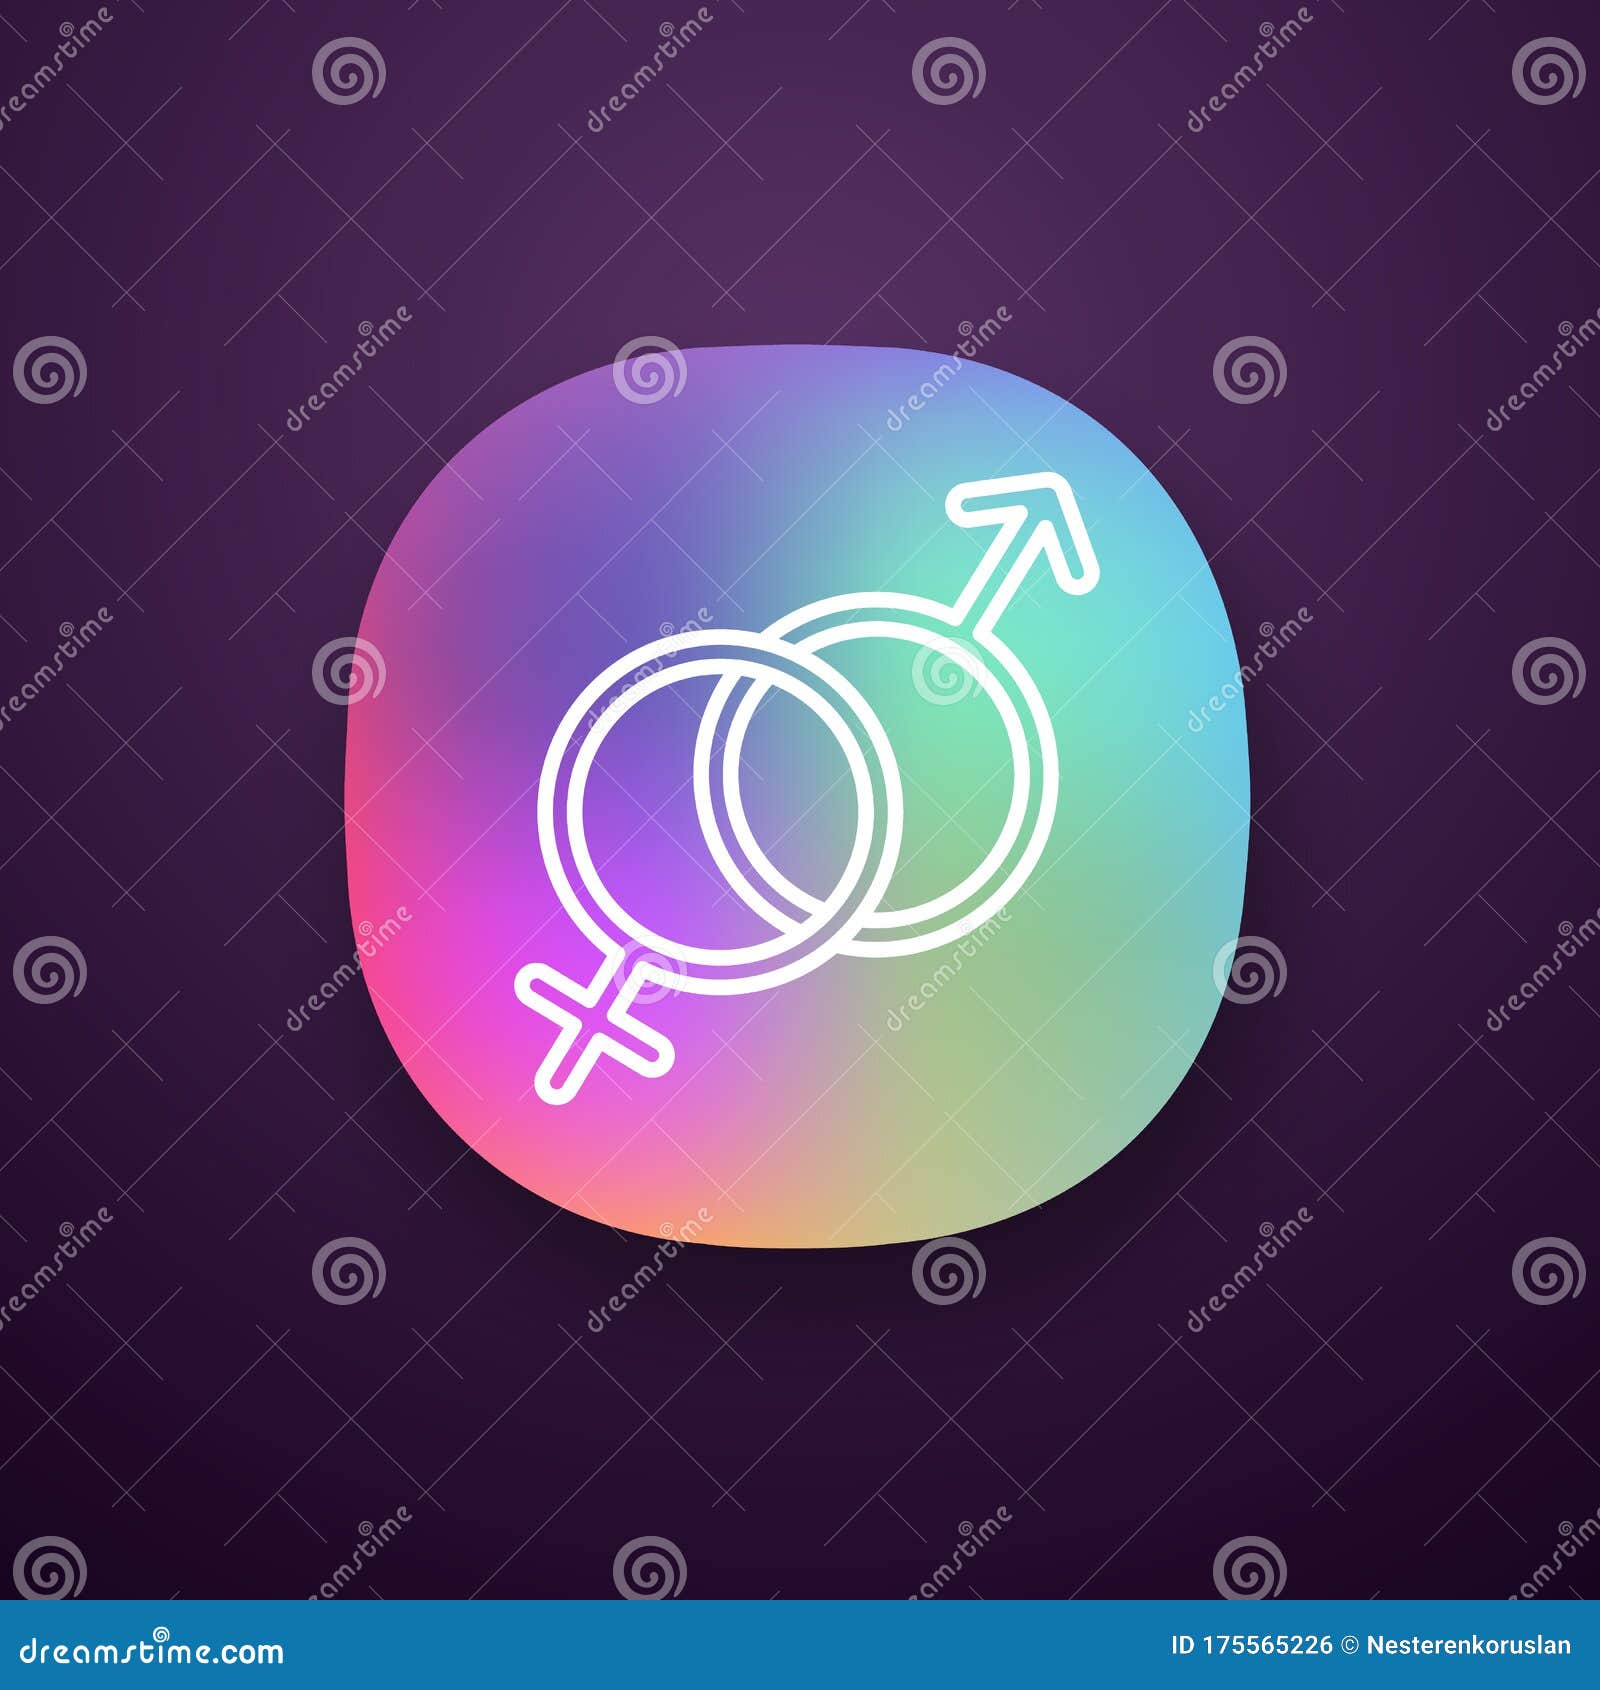 heterosexuality app icon